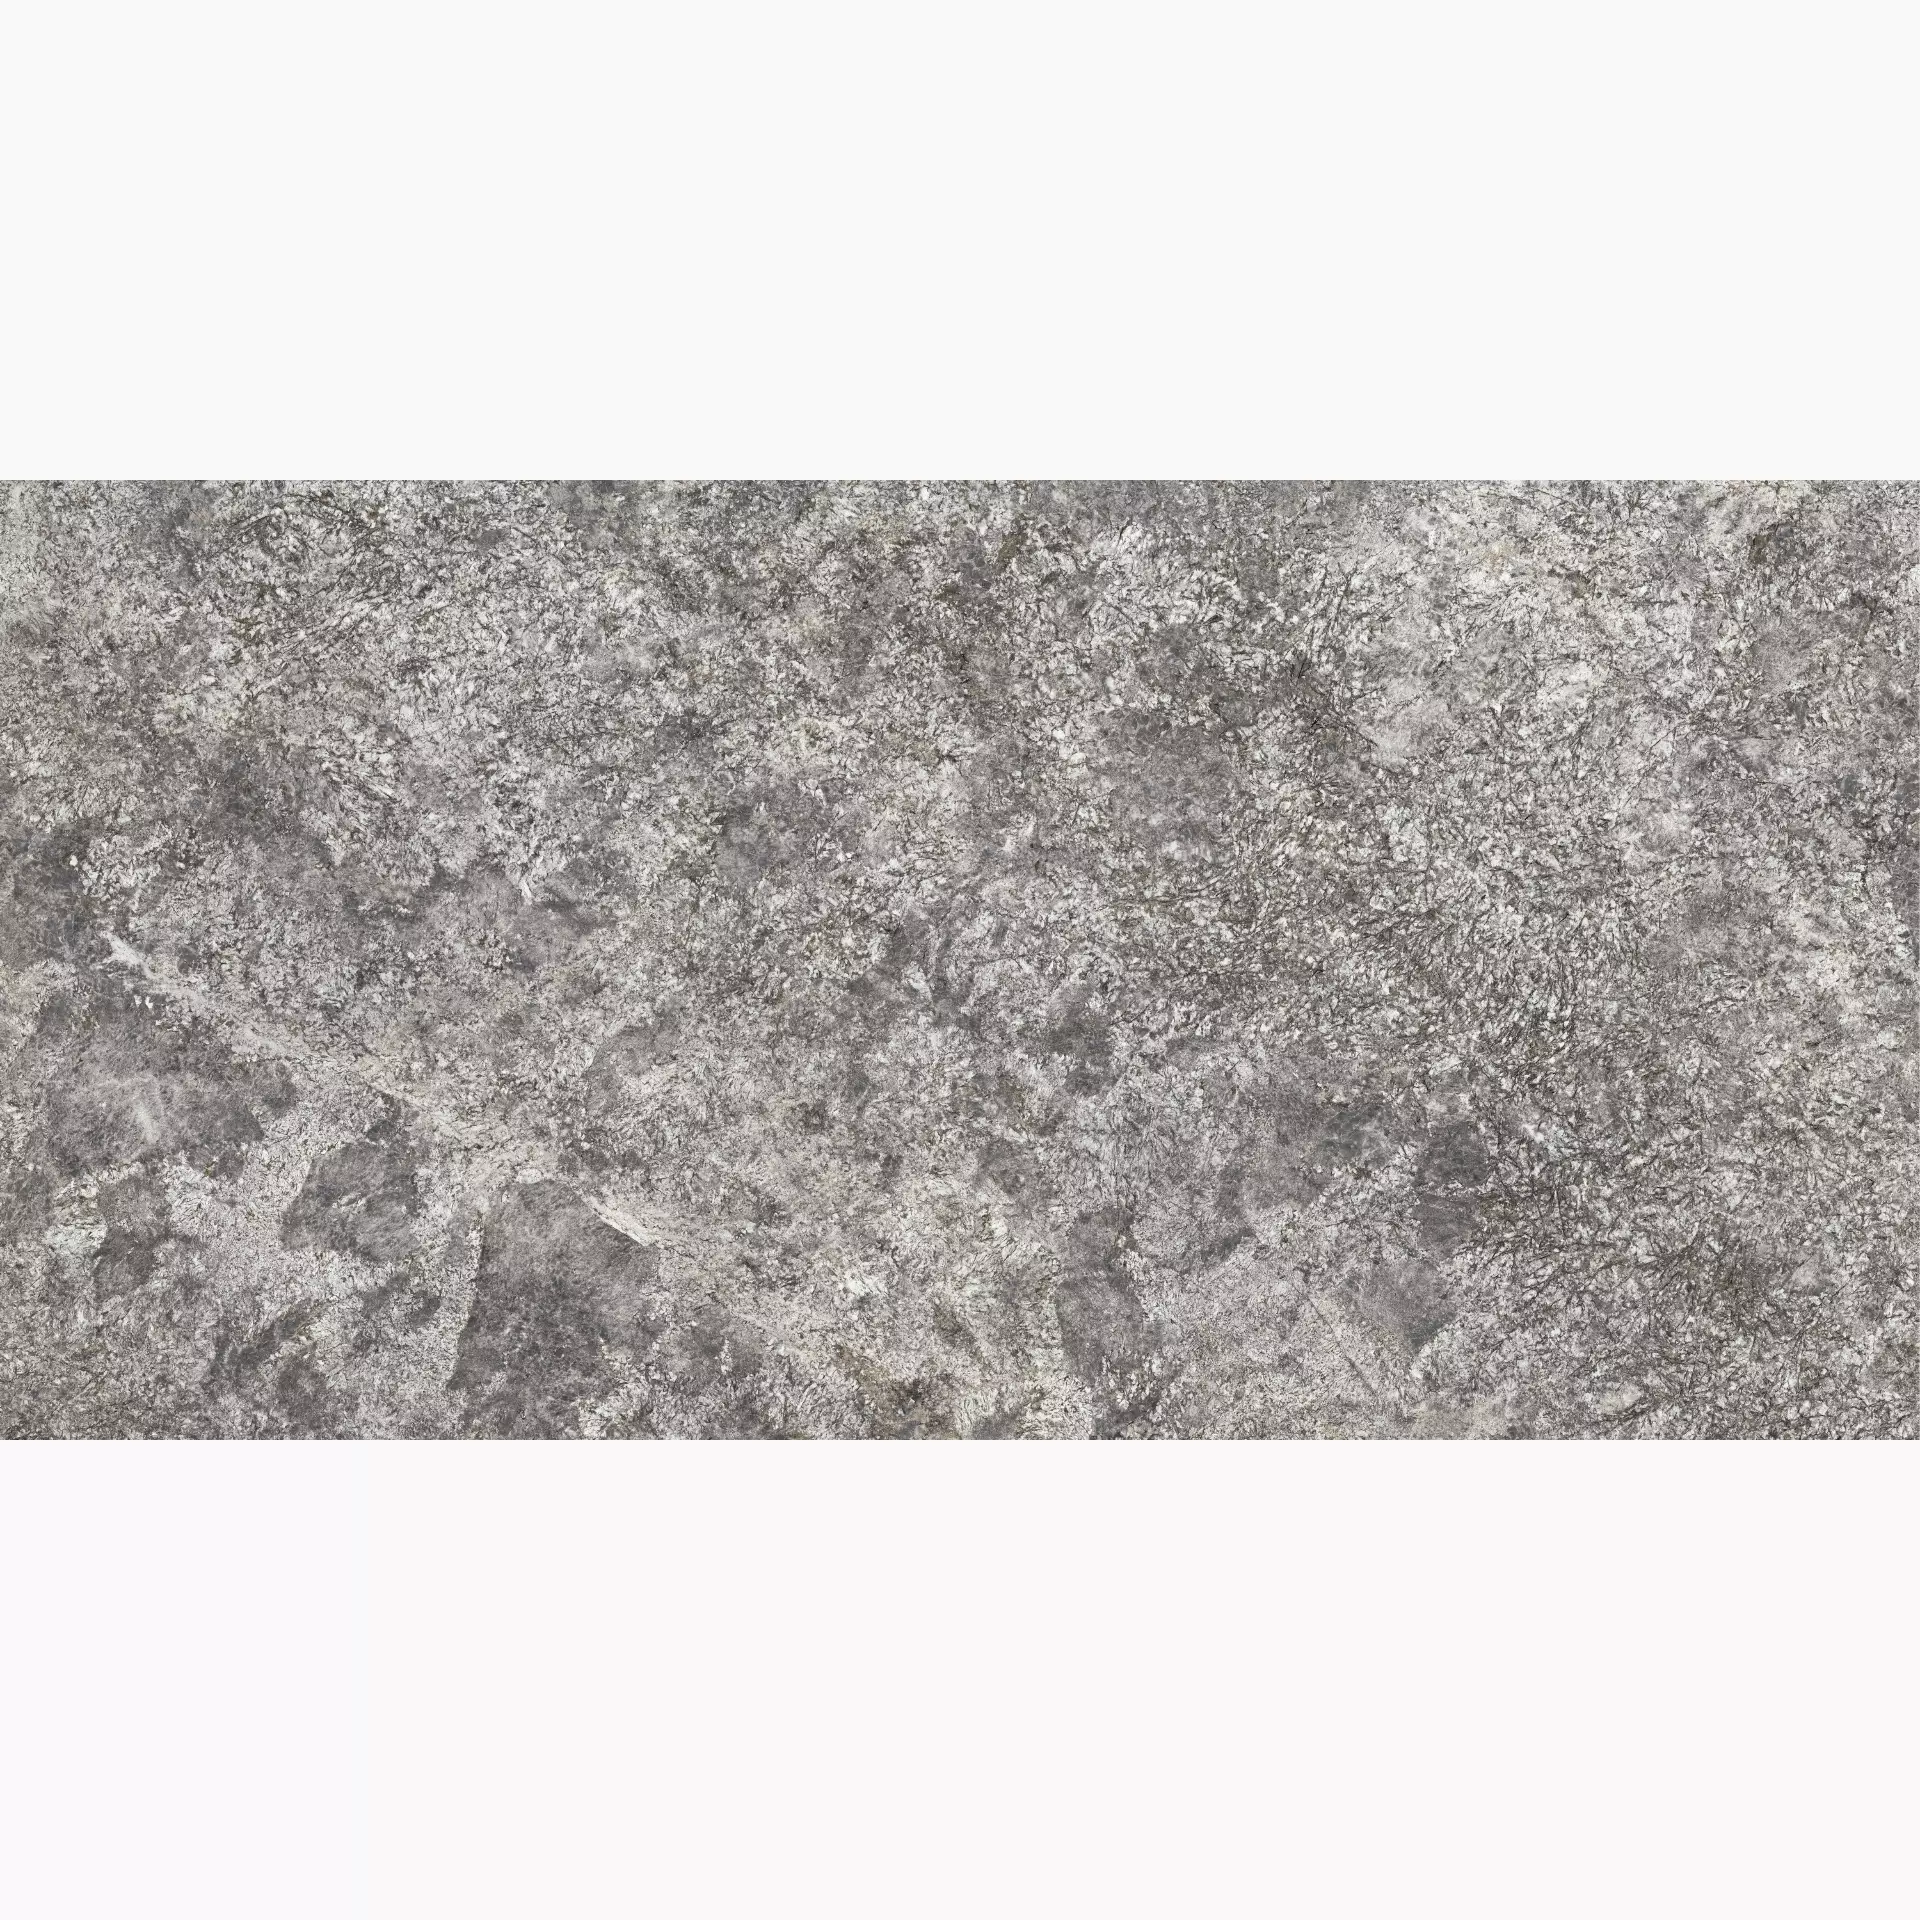 Maxfine Graniti Celeste Aran Lappato L315601MF6 150x300cm rectified 6mm